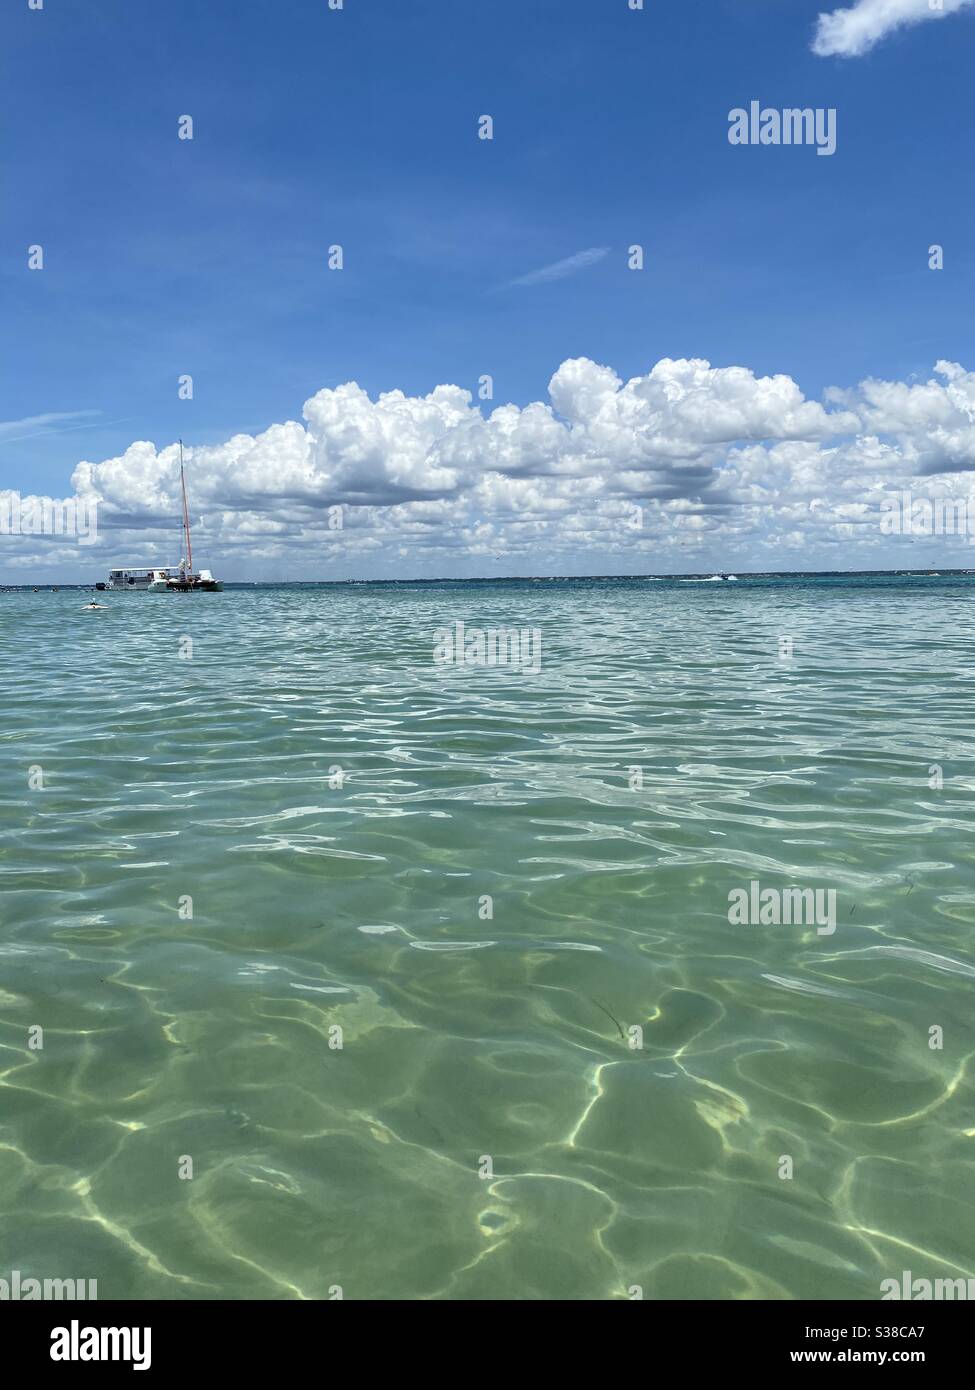 Acque cristalline color smeraldo a Crab Island Destin, Florida, con imbarcazioni lontane sull'acqua Foto Stock